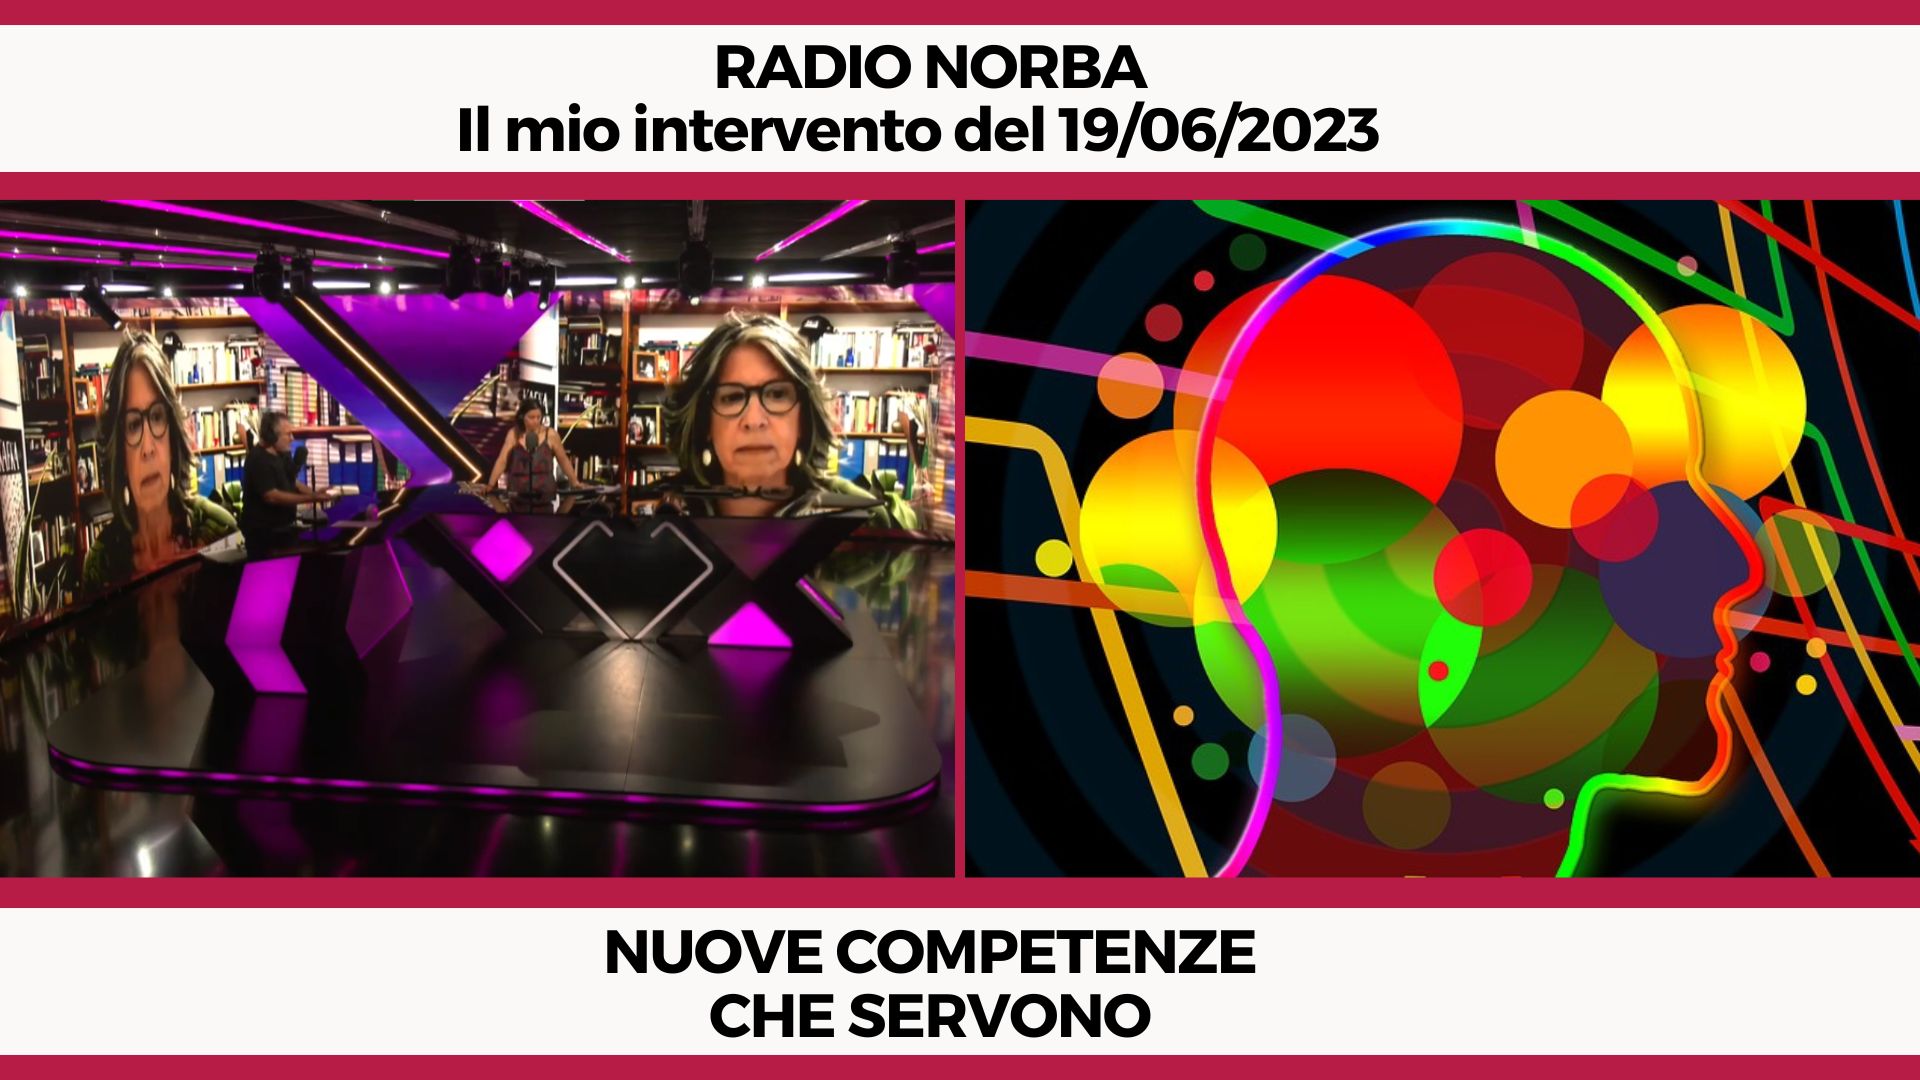 Nuove competenze che servono - Il mio intervento a Radio Norba del 19/06/2023